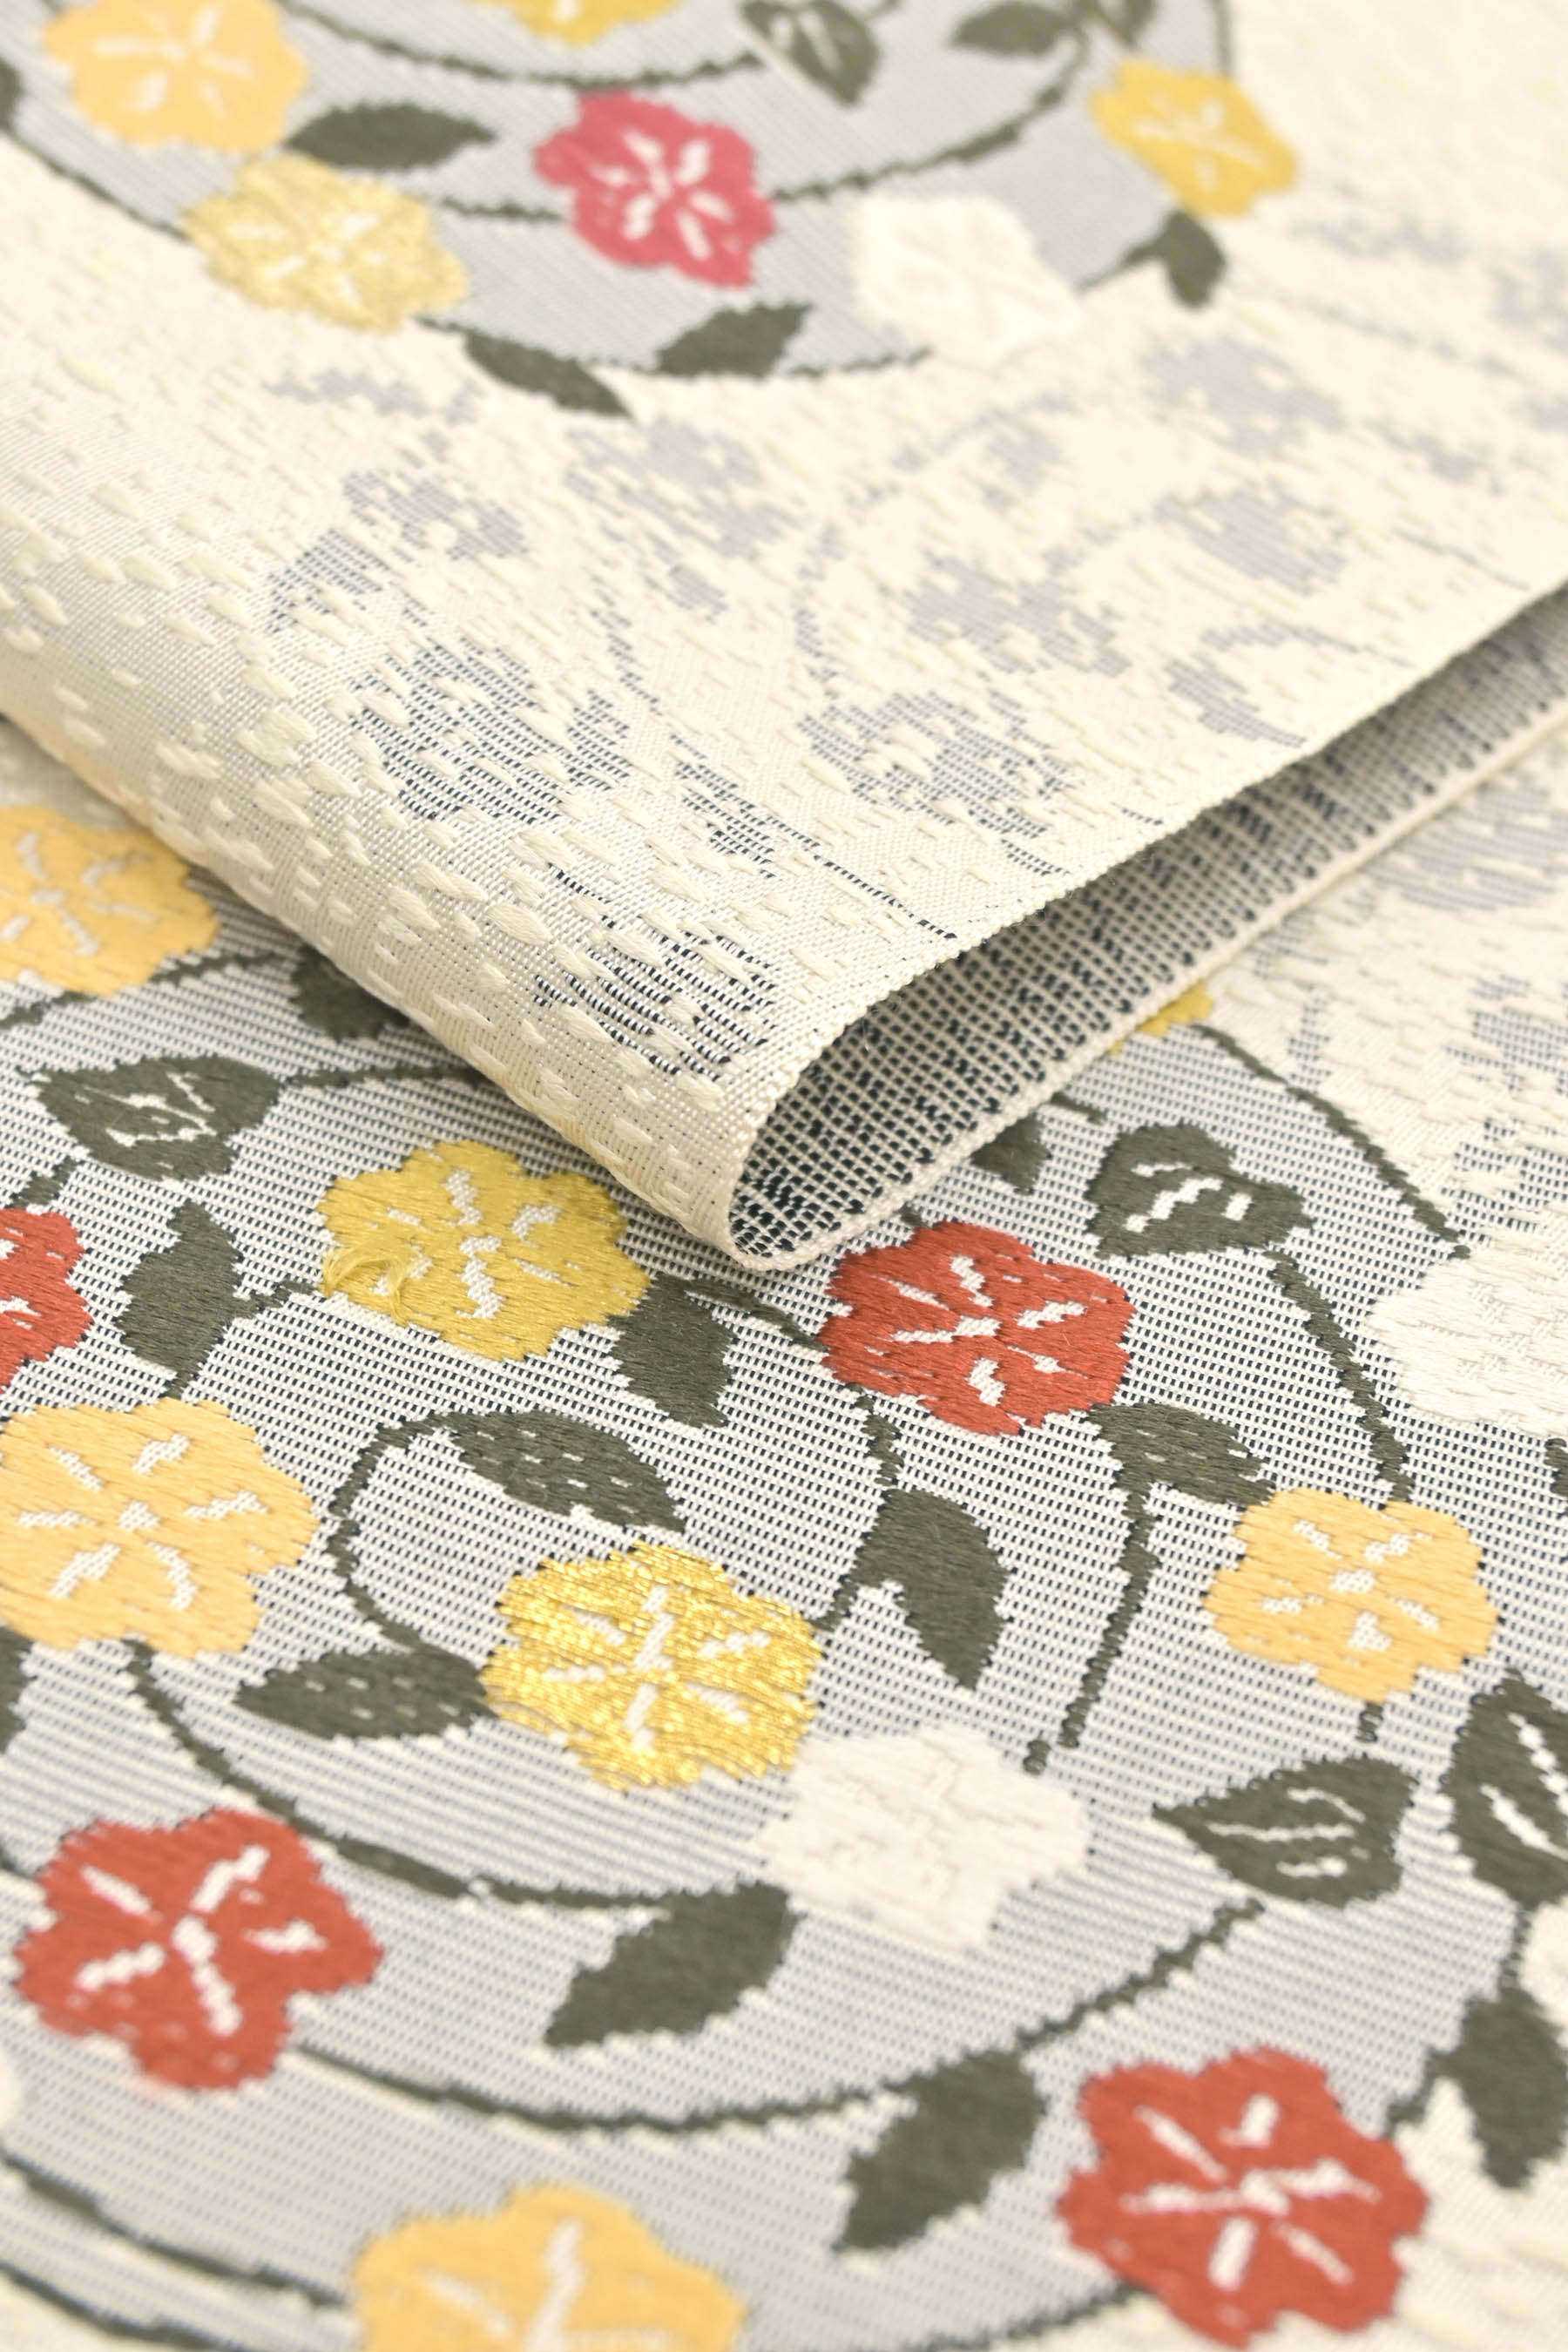 【やまひろ工藝】 特選九寸名古屋帯 日本の絹使用 「春爛漫」 隠れた小機屋のセンス溢れる一条。 こだわりの一条をお探しの方へ！